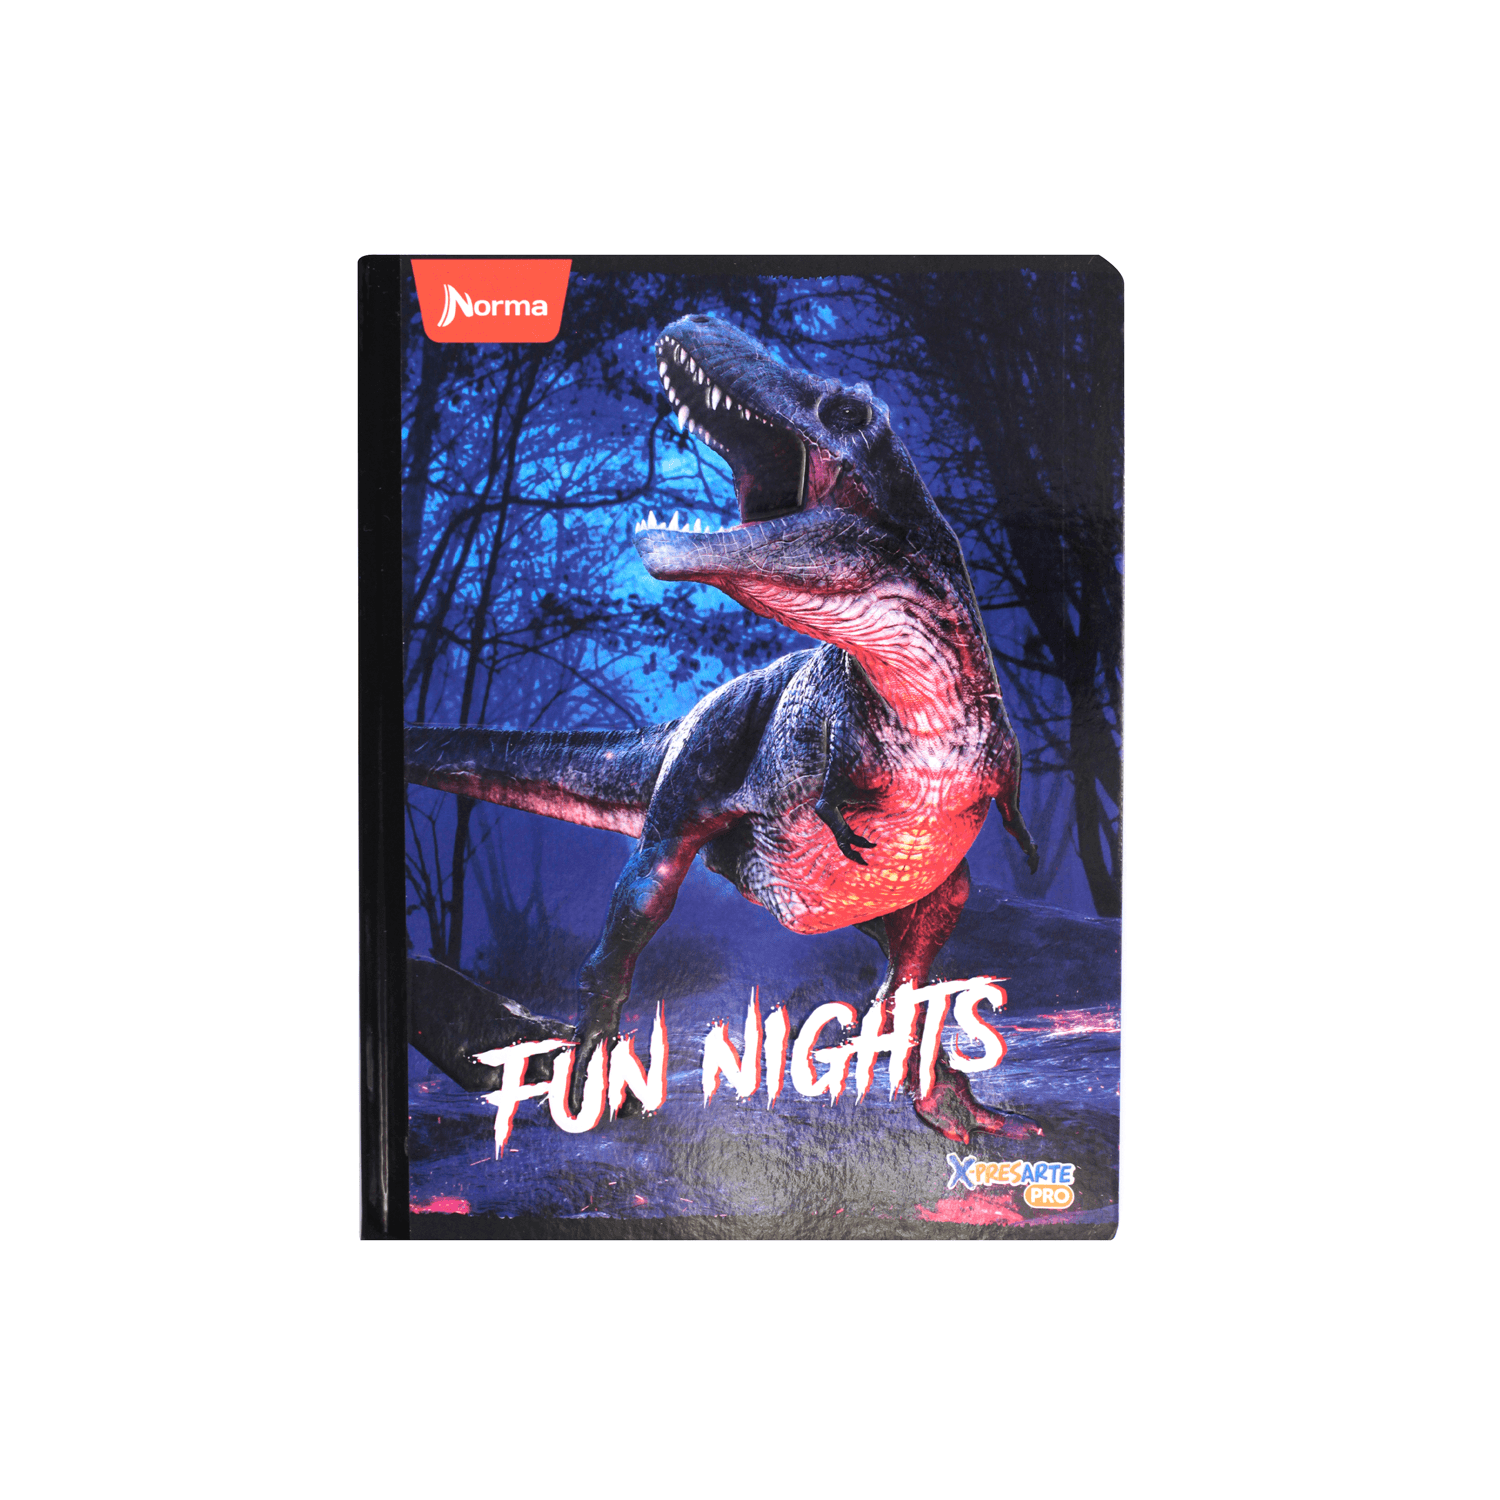 Cuaderno Cosido Dinosaurios Mediano 50 Hojas 1 Materia Linea Corriente  Colombia - 5 Fun Nights - Tienda Norma